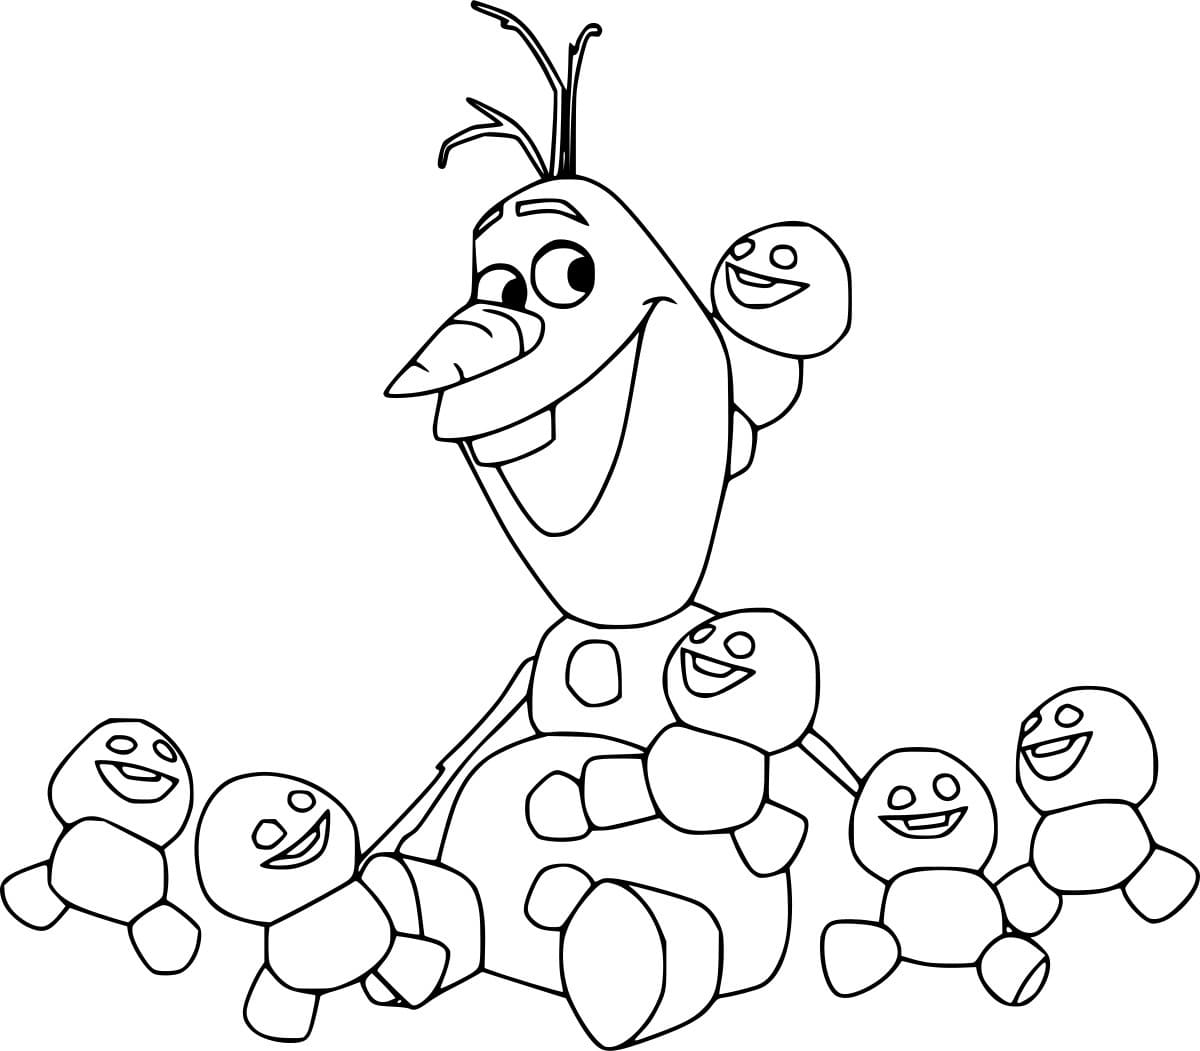 Olaf com bonecos de neve traquinas para colorir